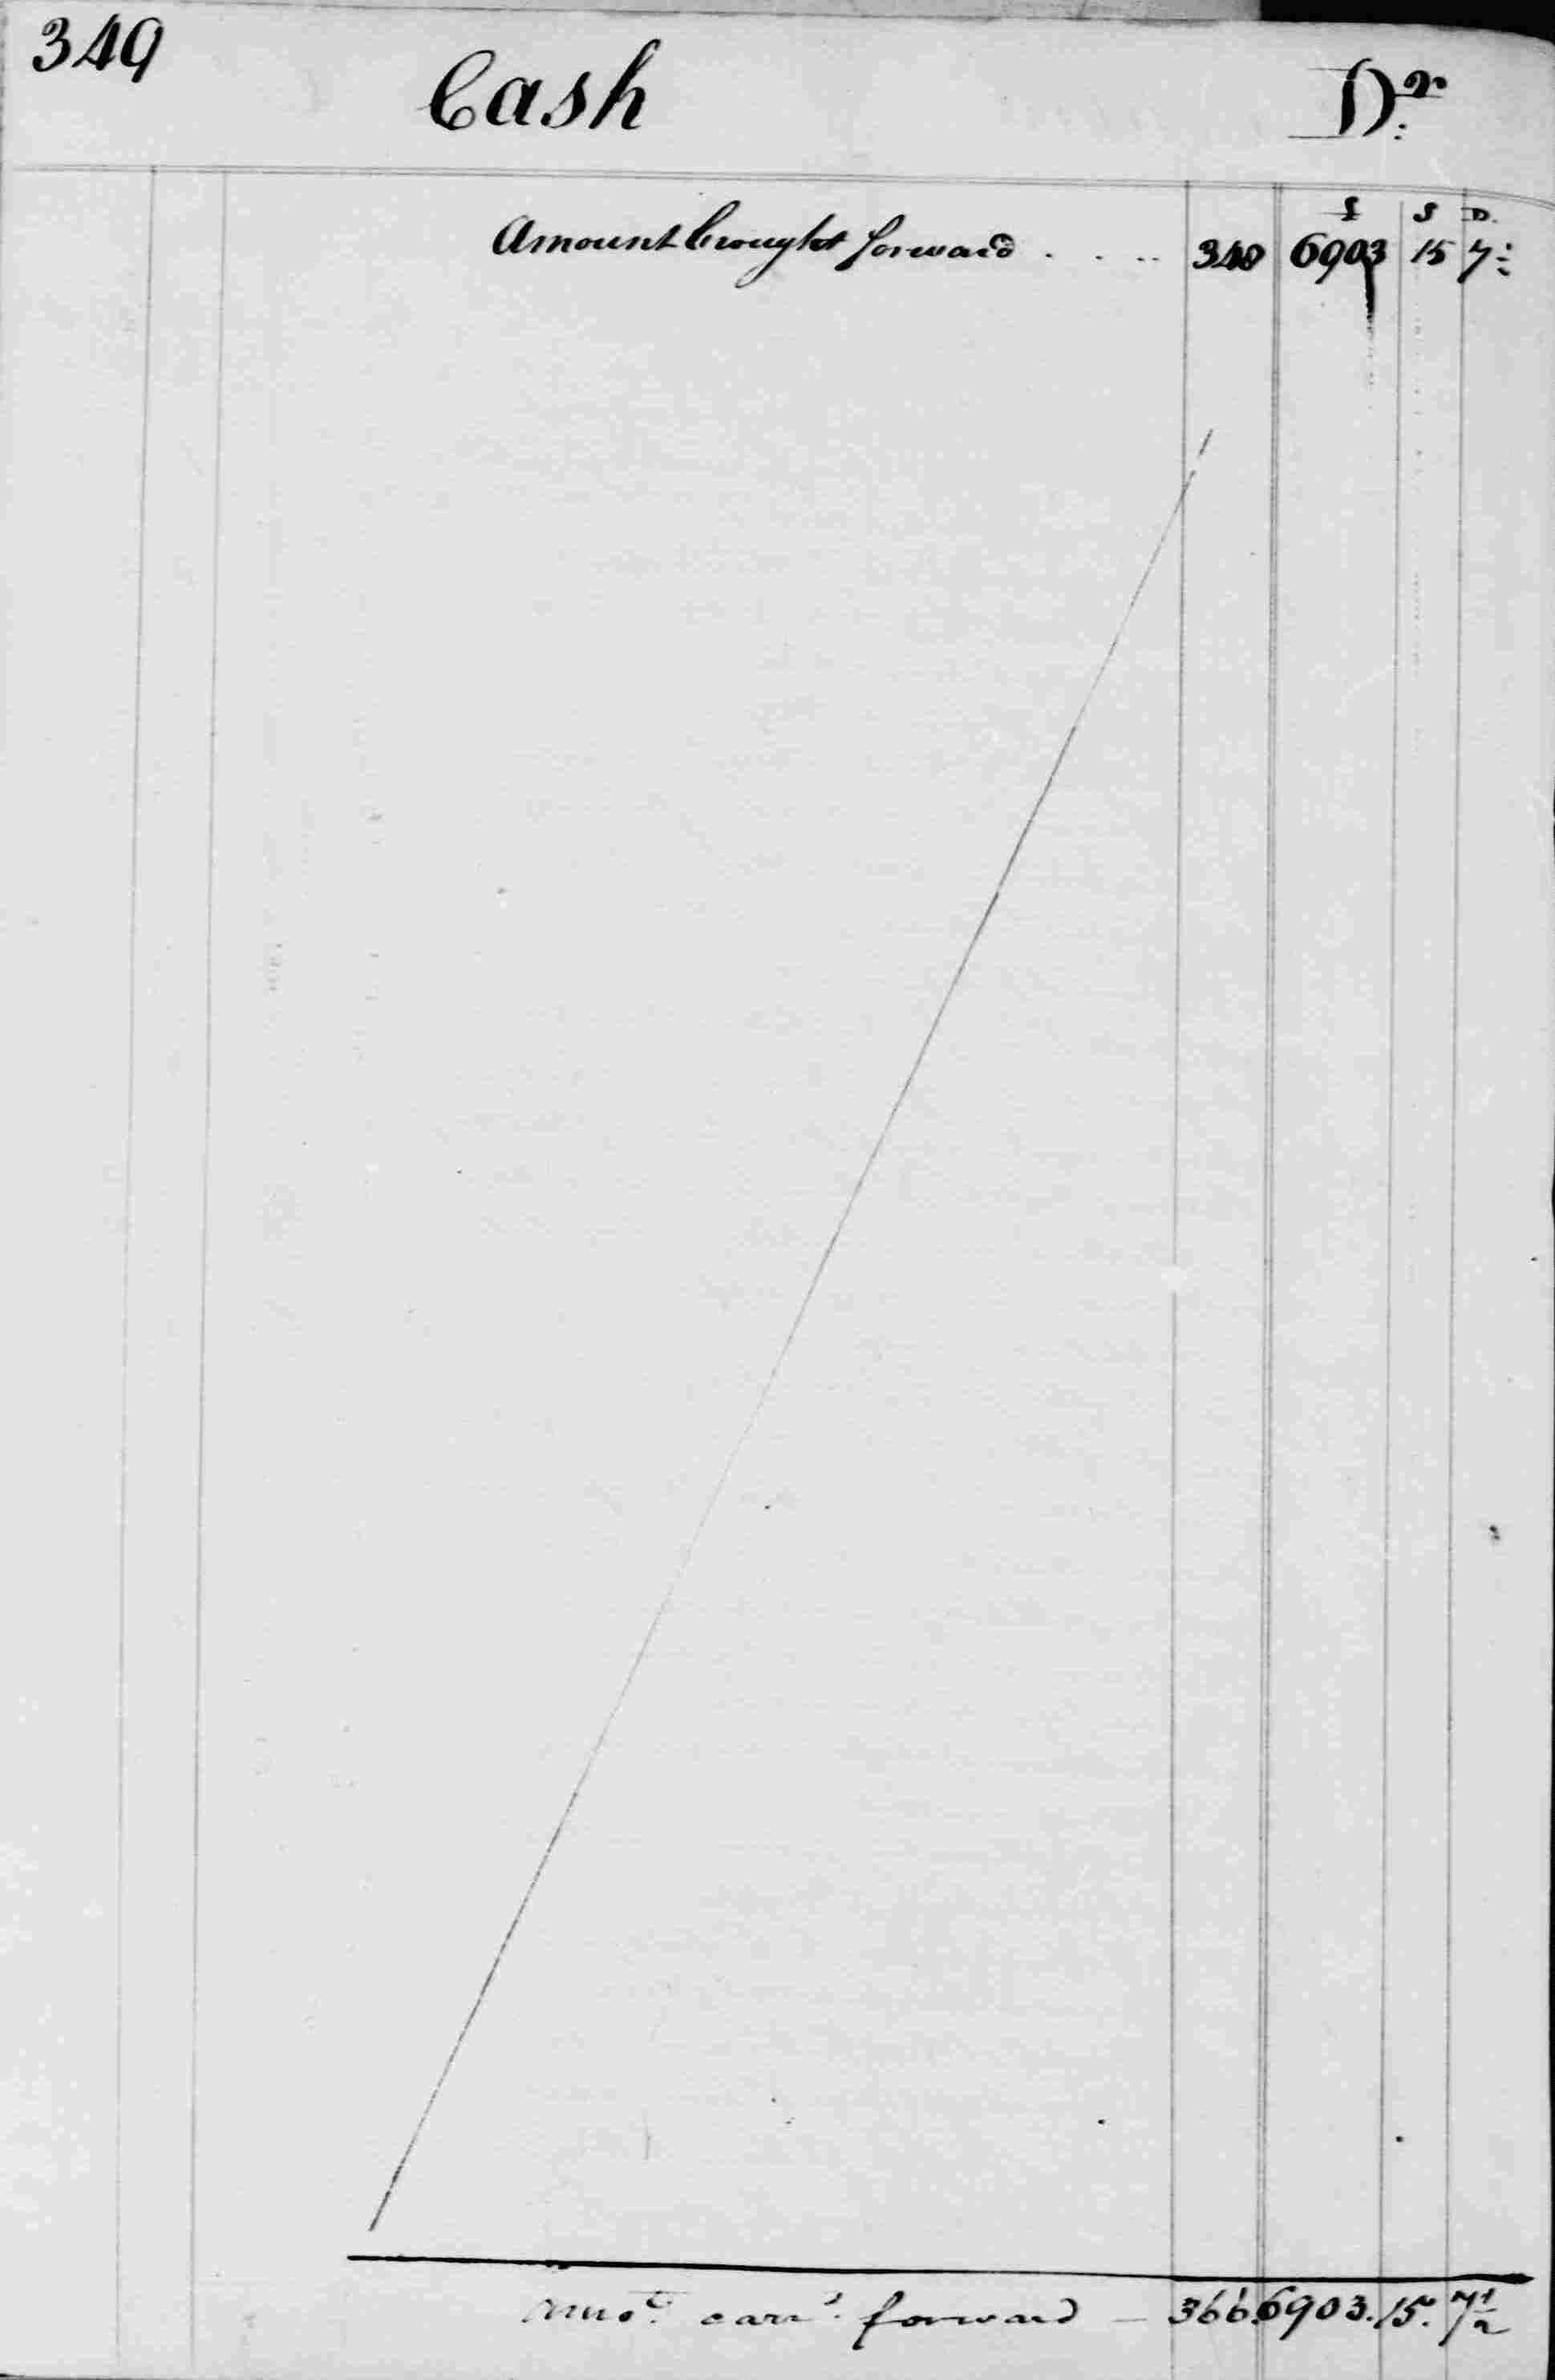 Ledger B, folio 349, left side